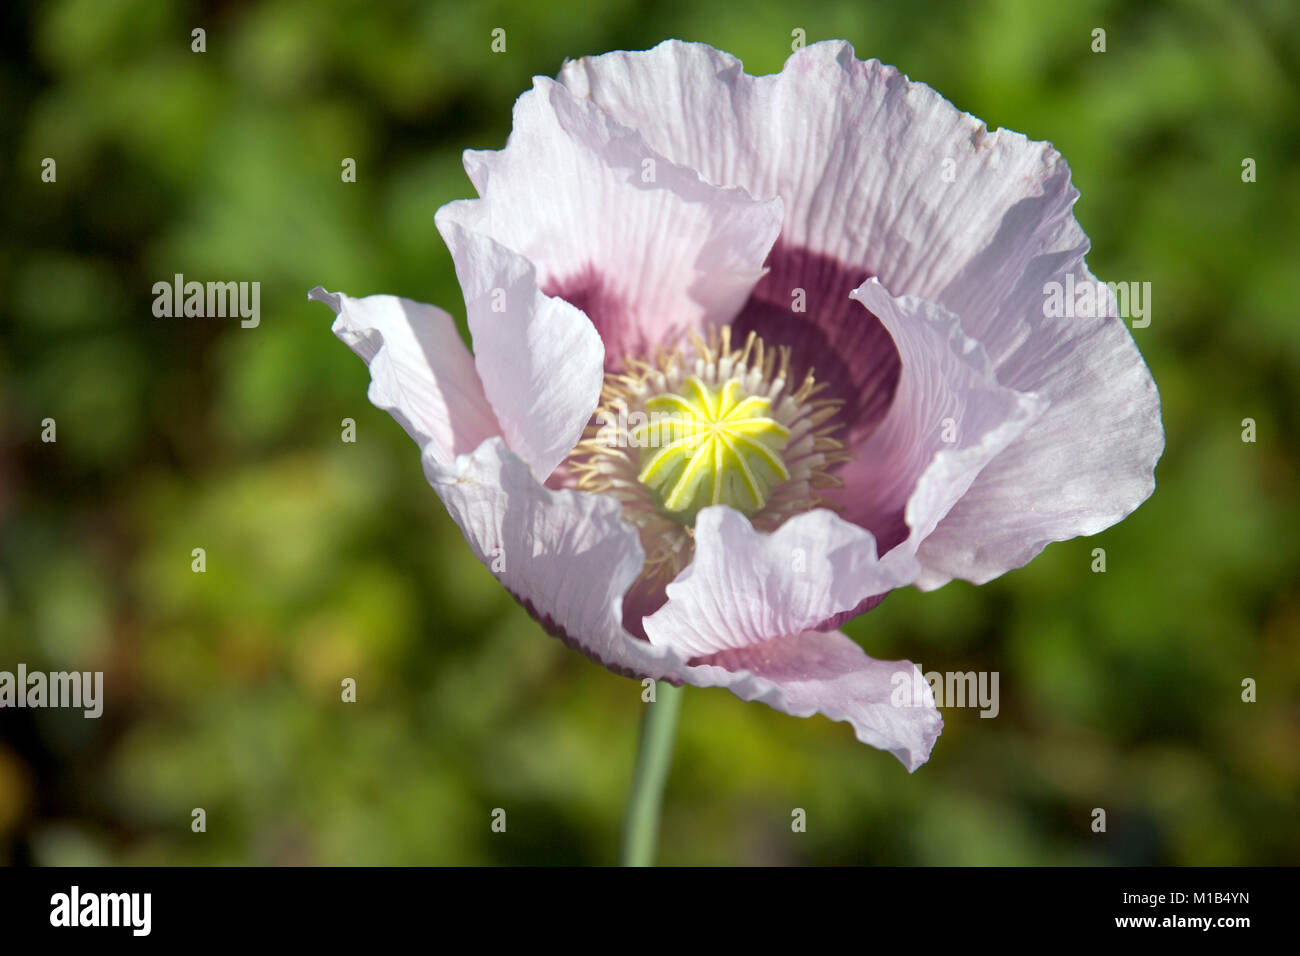 A single mauve poppy flower in a garden border Stock Photo